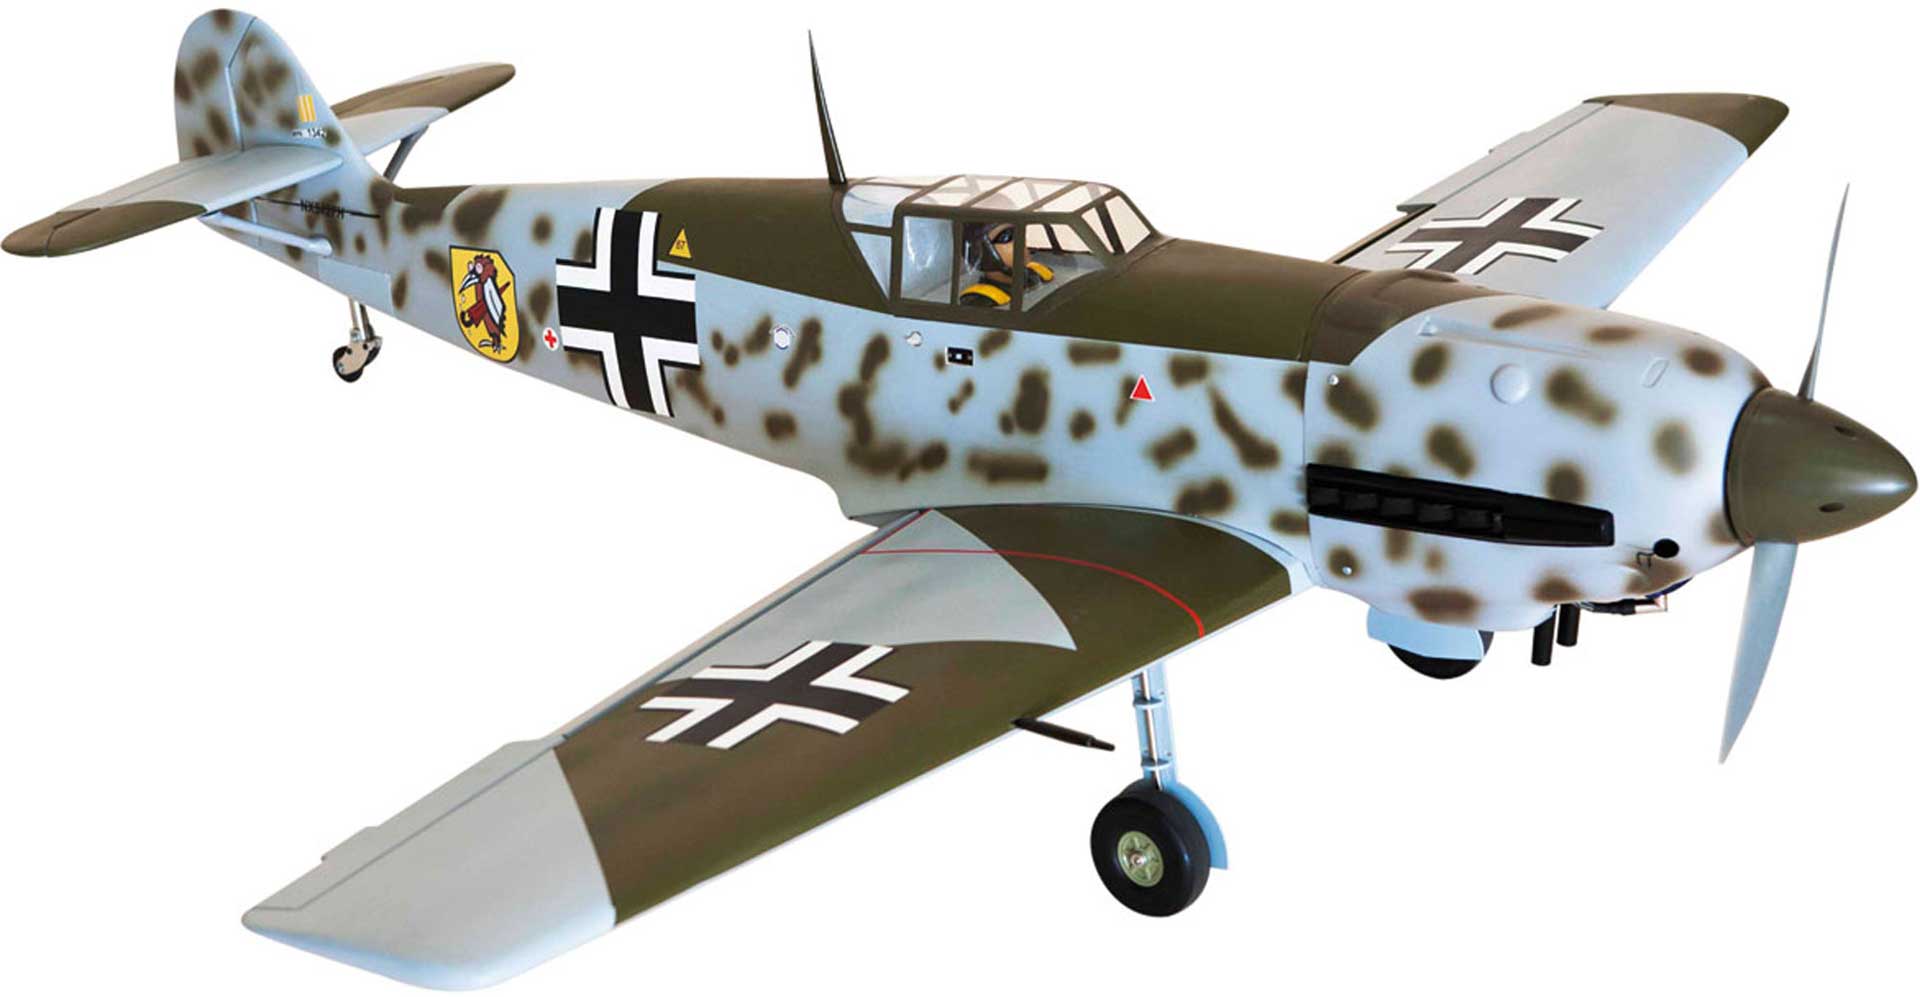 Sg Models Messerschmitt Bf 109 Me 109 Arf Warbird Mit Mechanical Retractable Landing Gear Buy Now At